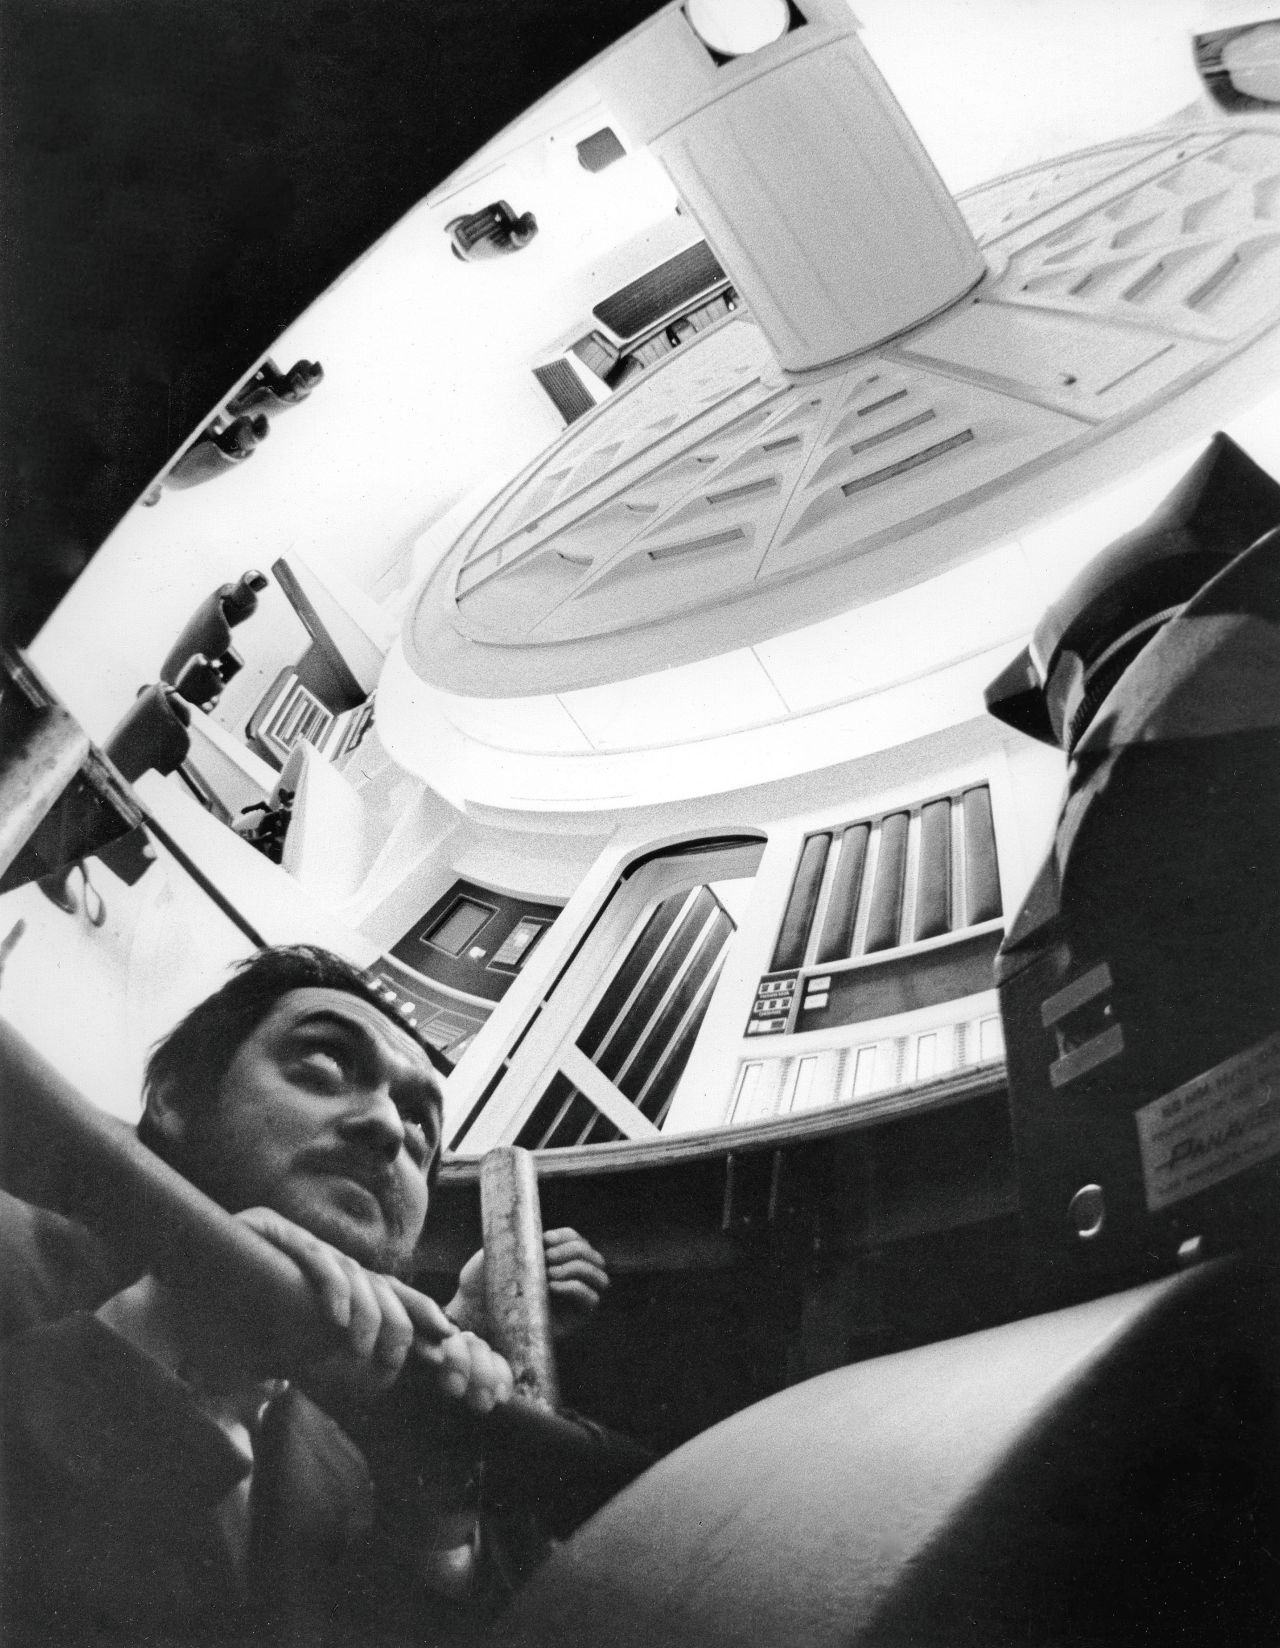 Kubrick giving instructions on set.